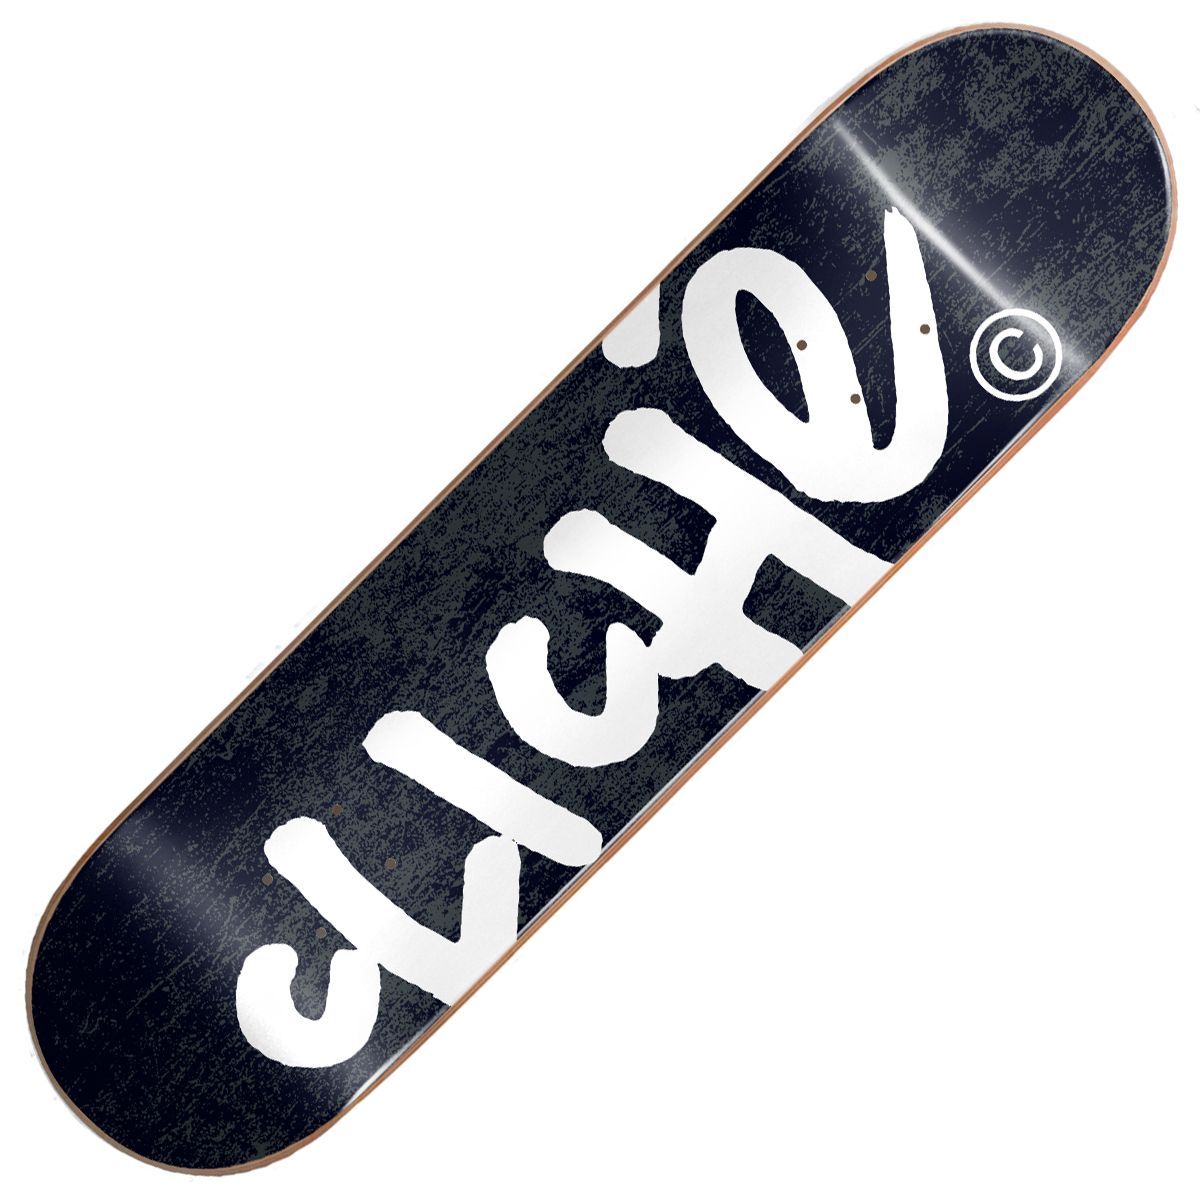 CLICHÉ Handwritten RHM skateboard deck